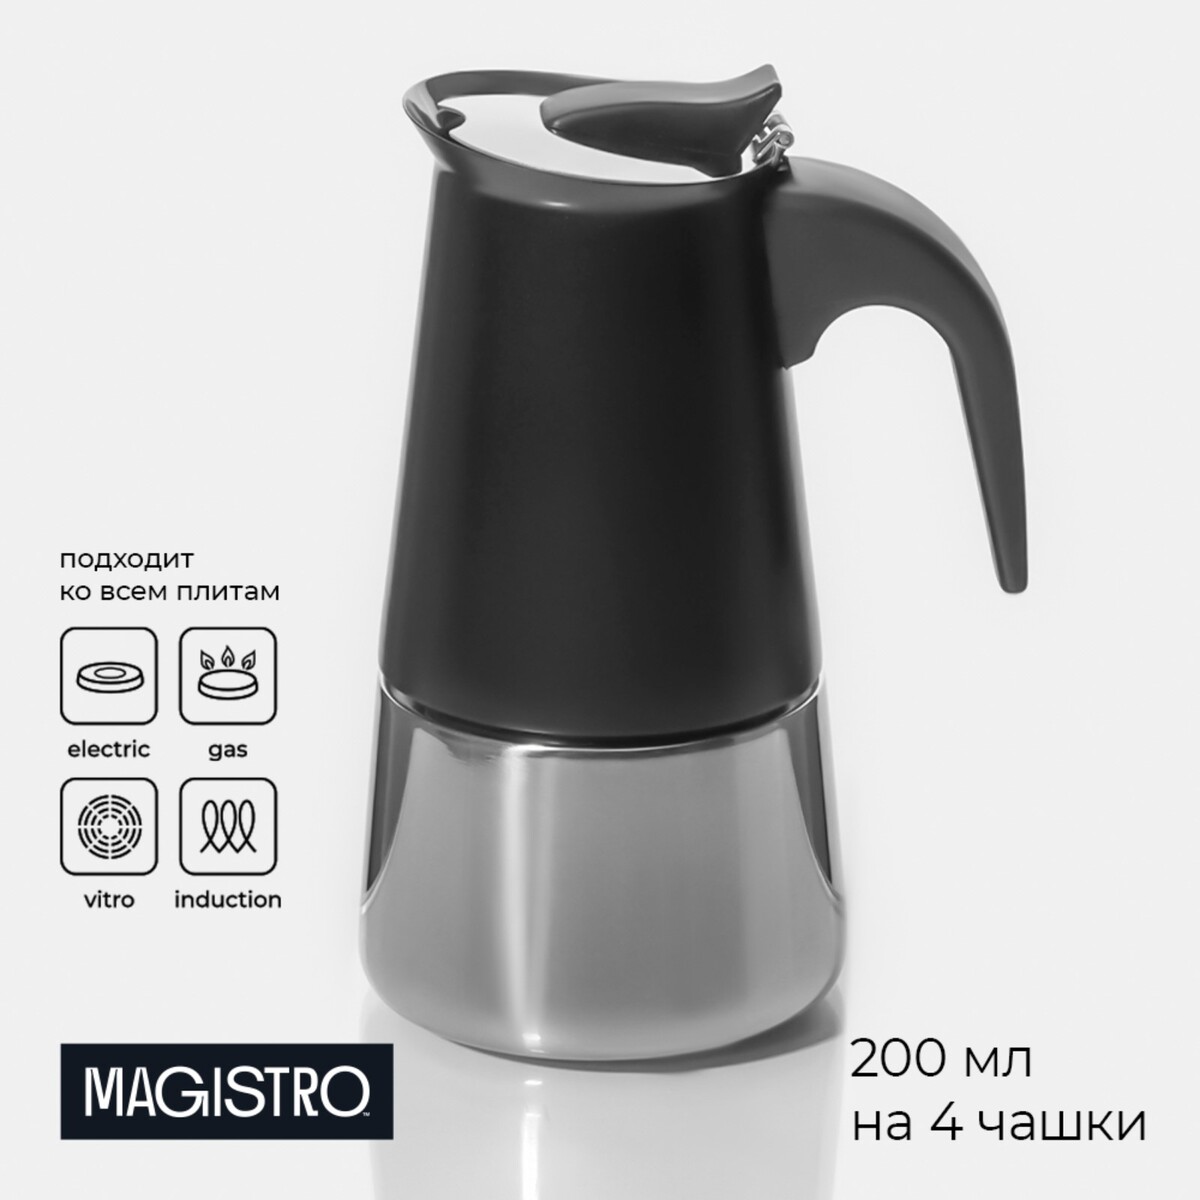 Кофеварка гейзерная magistro кофеварка гейзерная magistro classic на 4 чашки 200 мл нержавеющая сталь